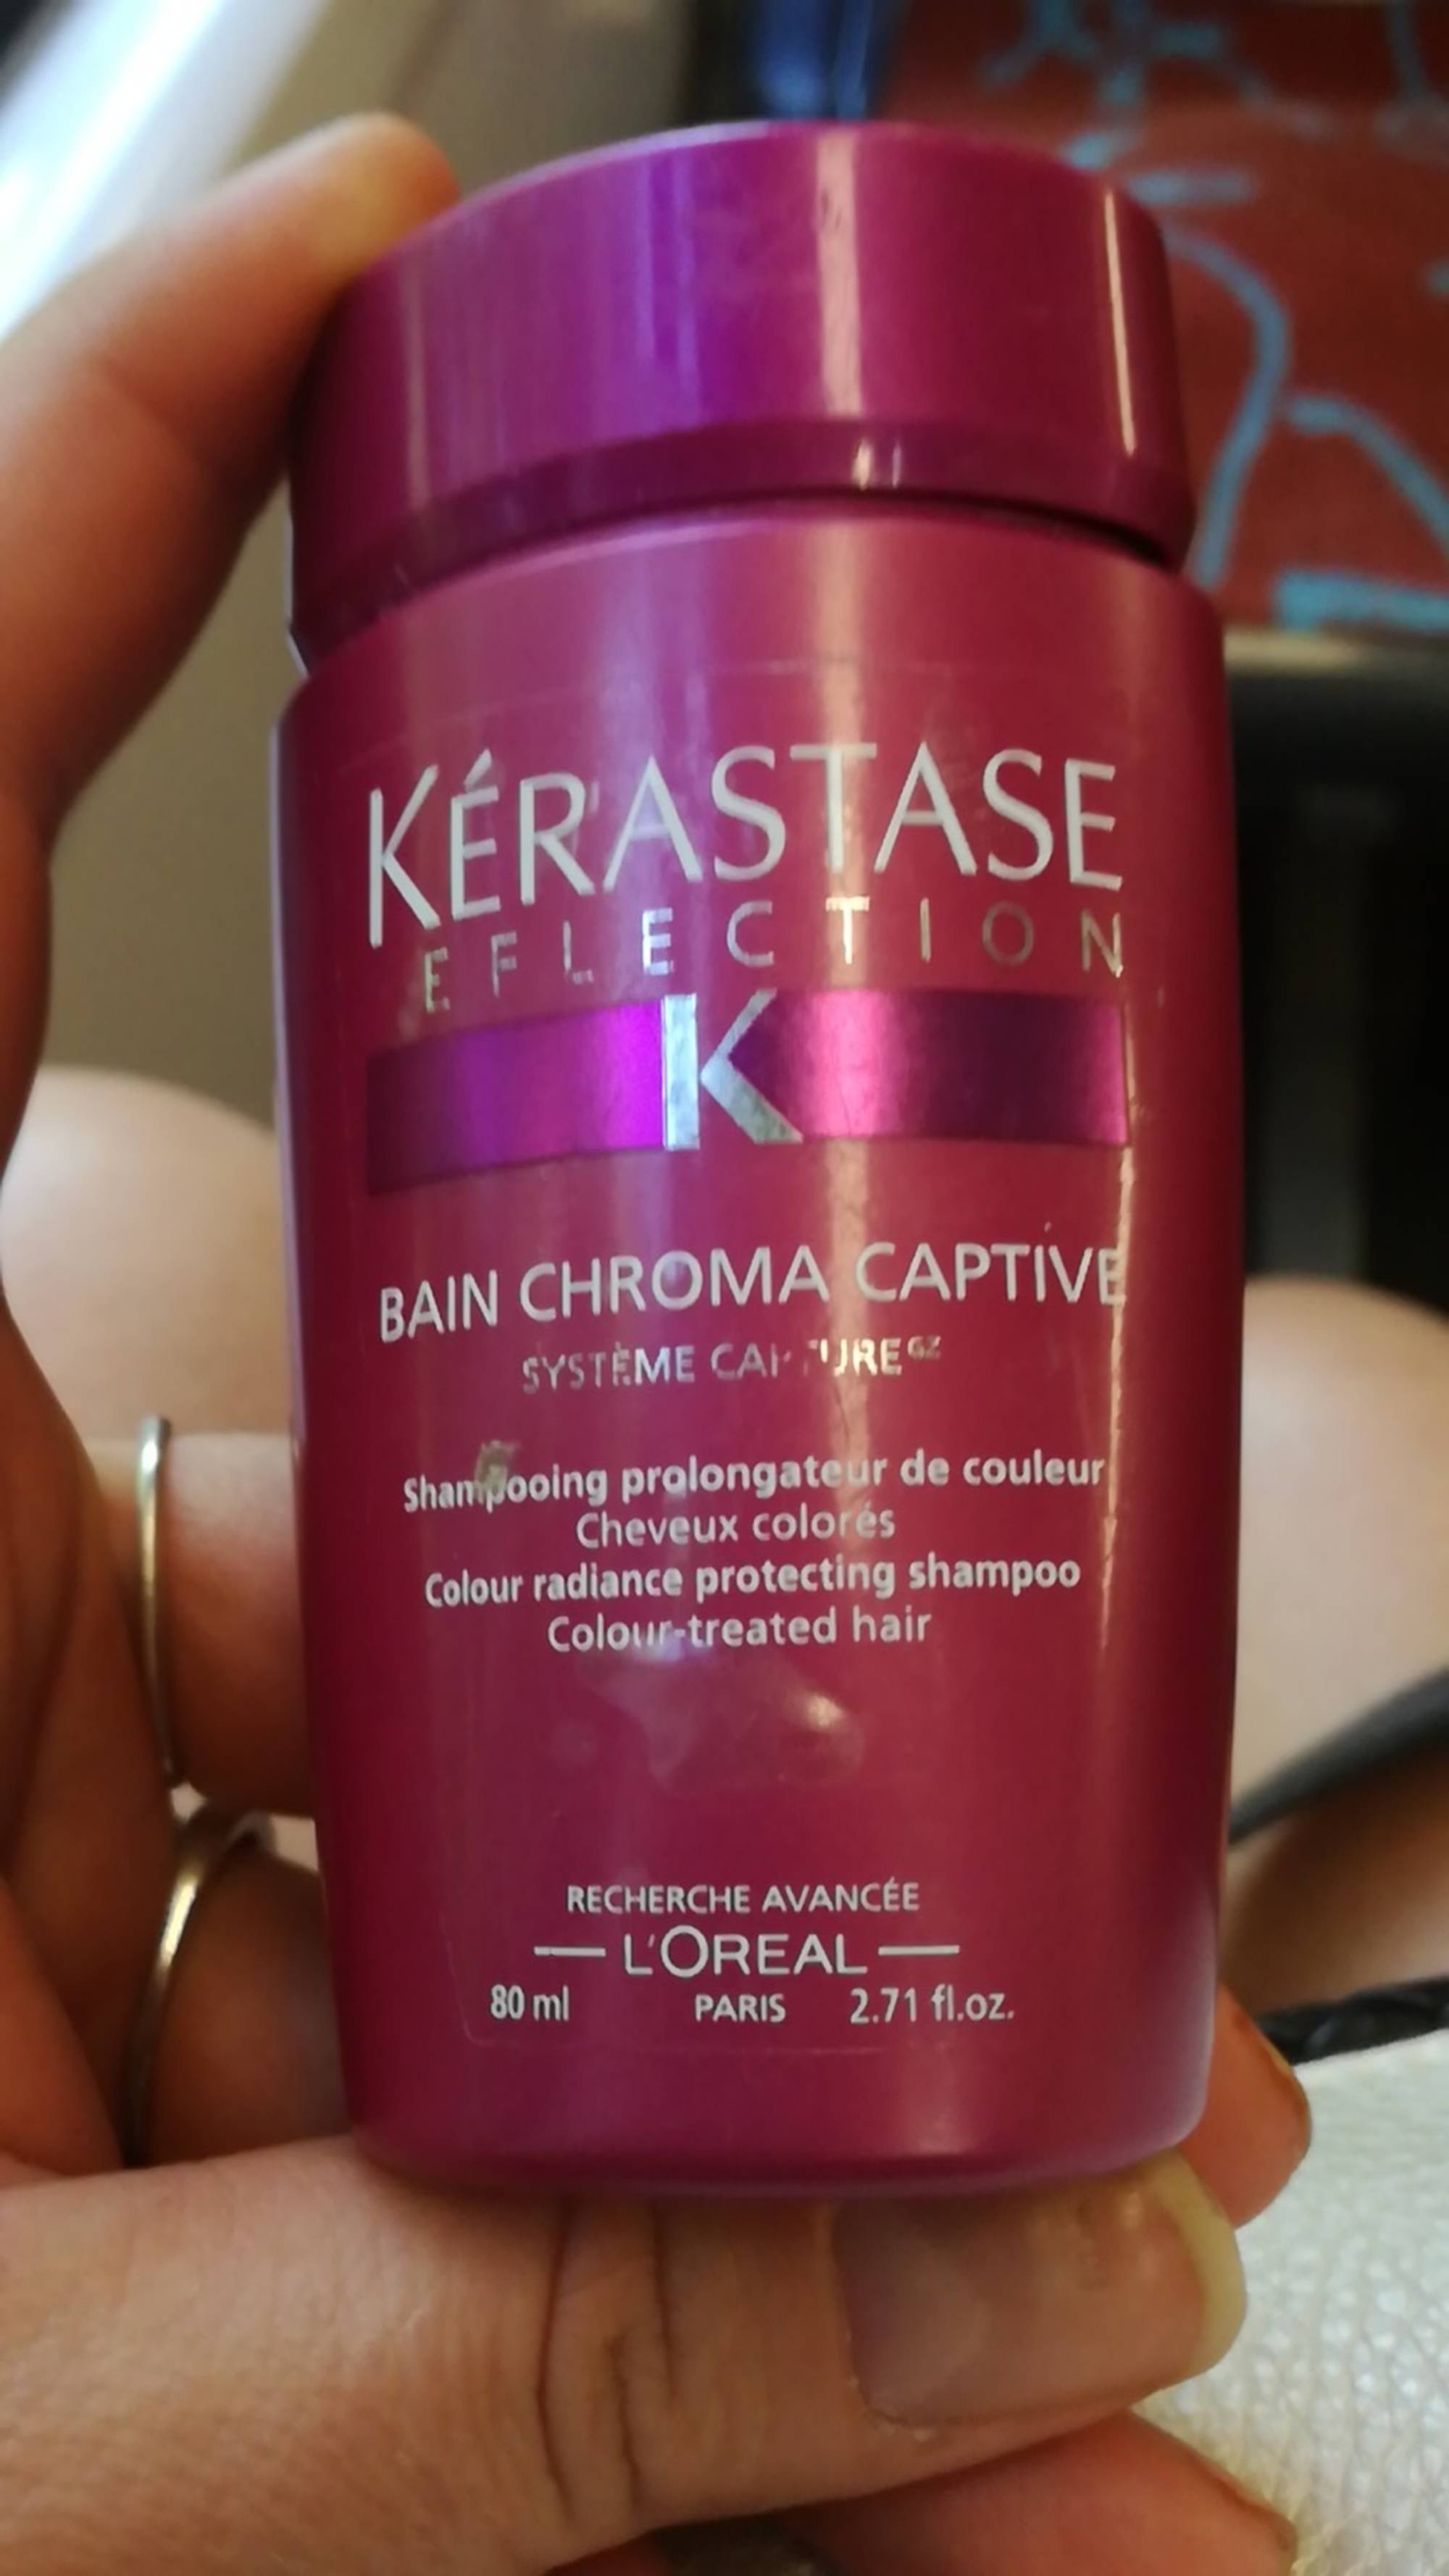 KÉRASTASE - Bain chroma captive - Shampooing prolongateur de couleur